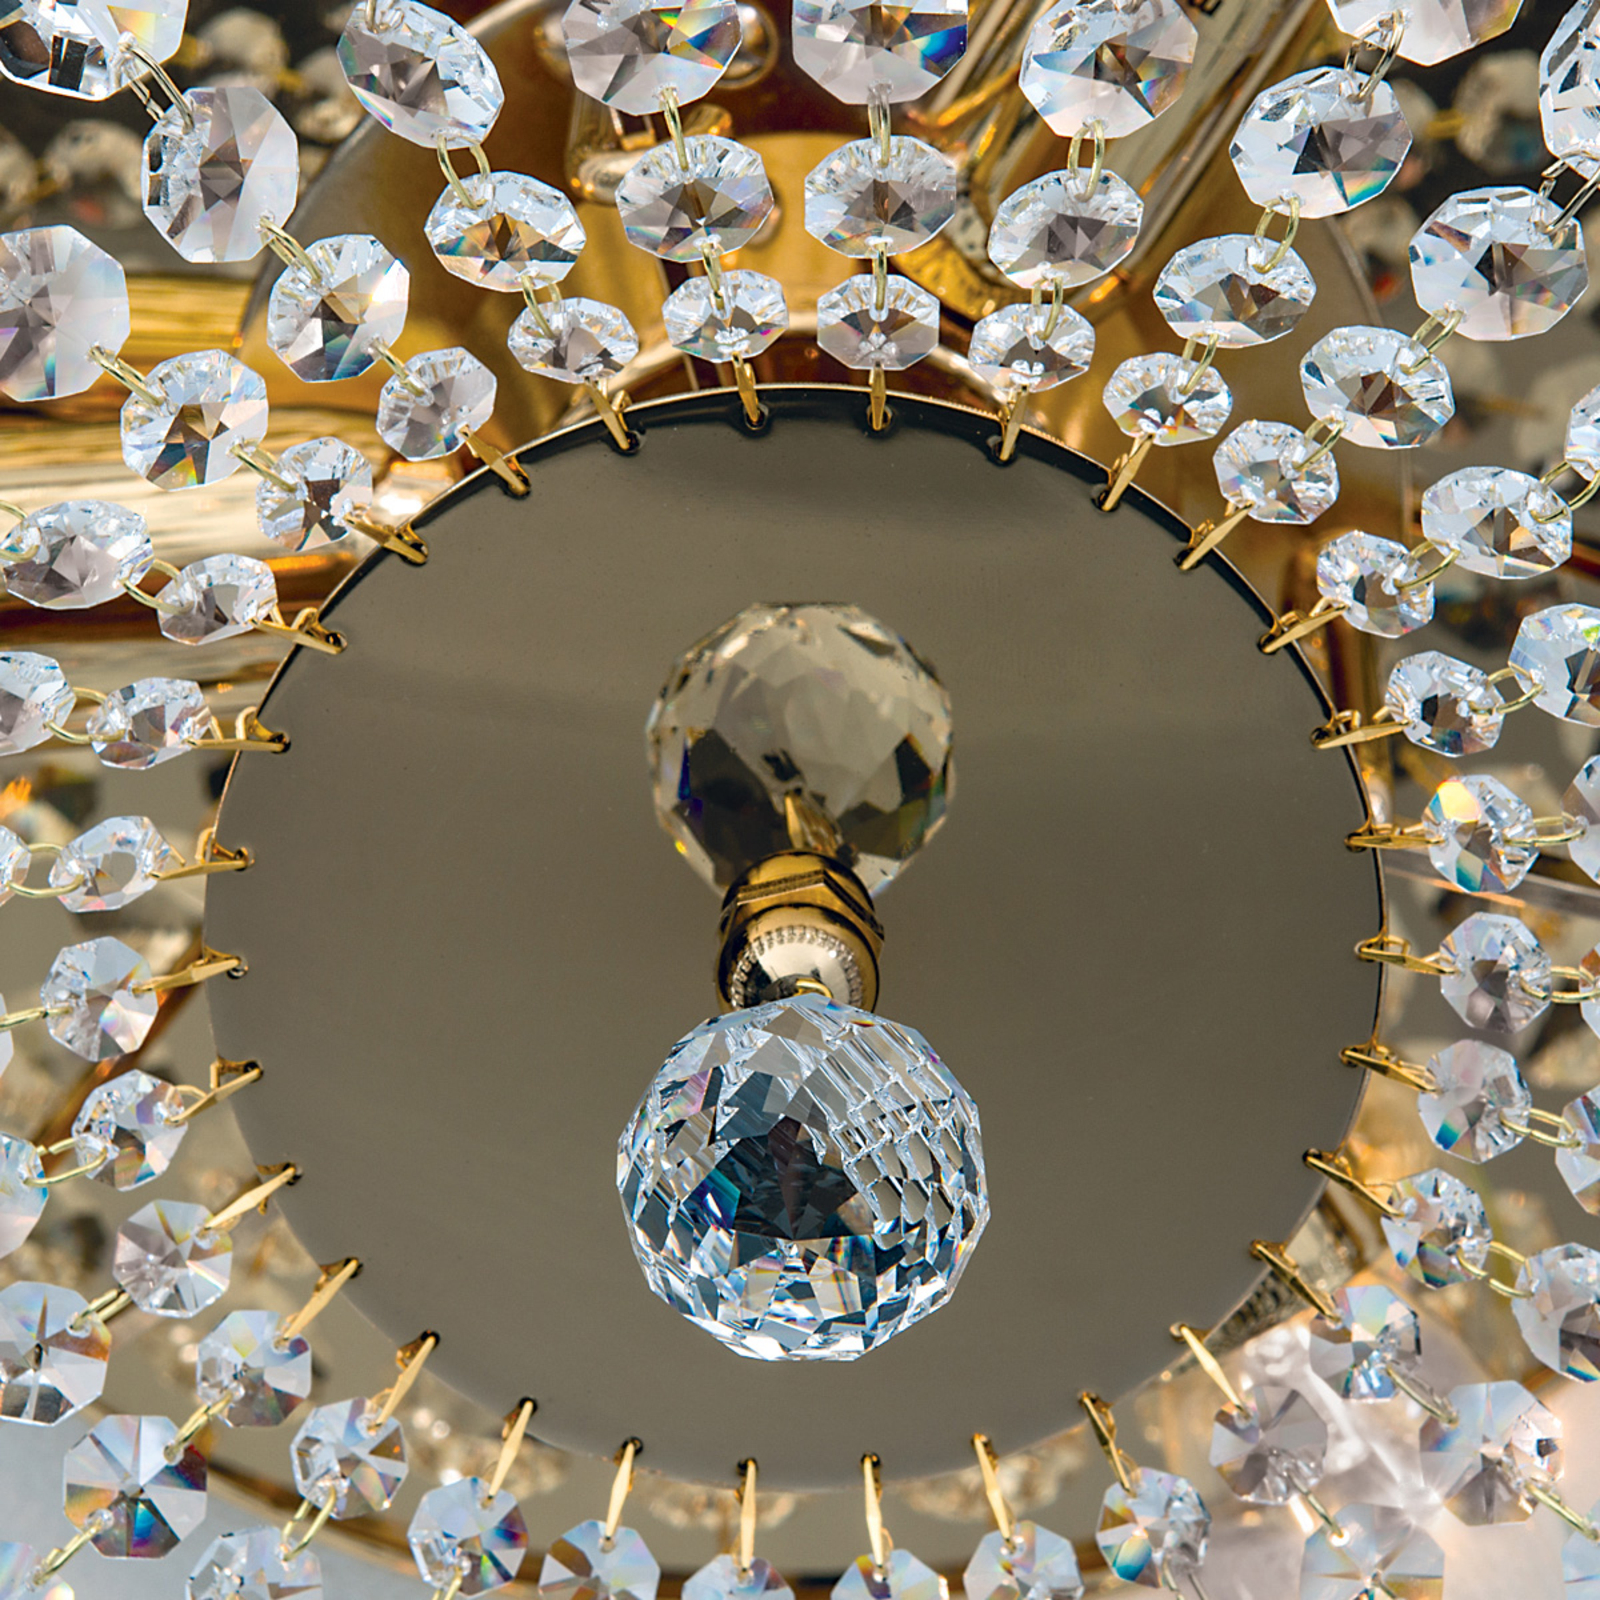 Kristalldeckenleuchte SHERATA rund, gold 35 cm